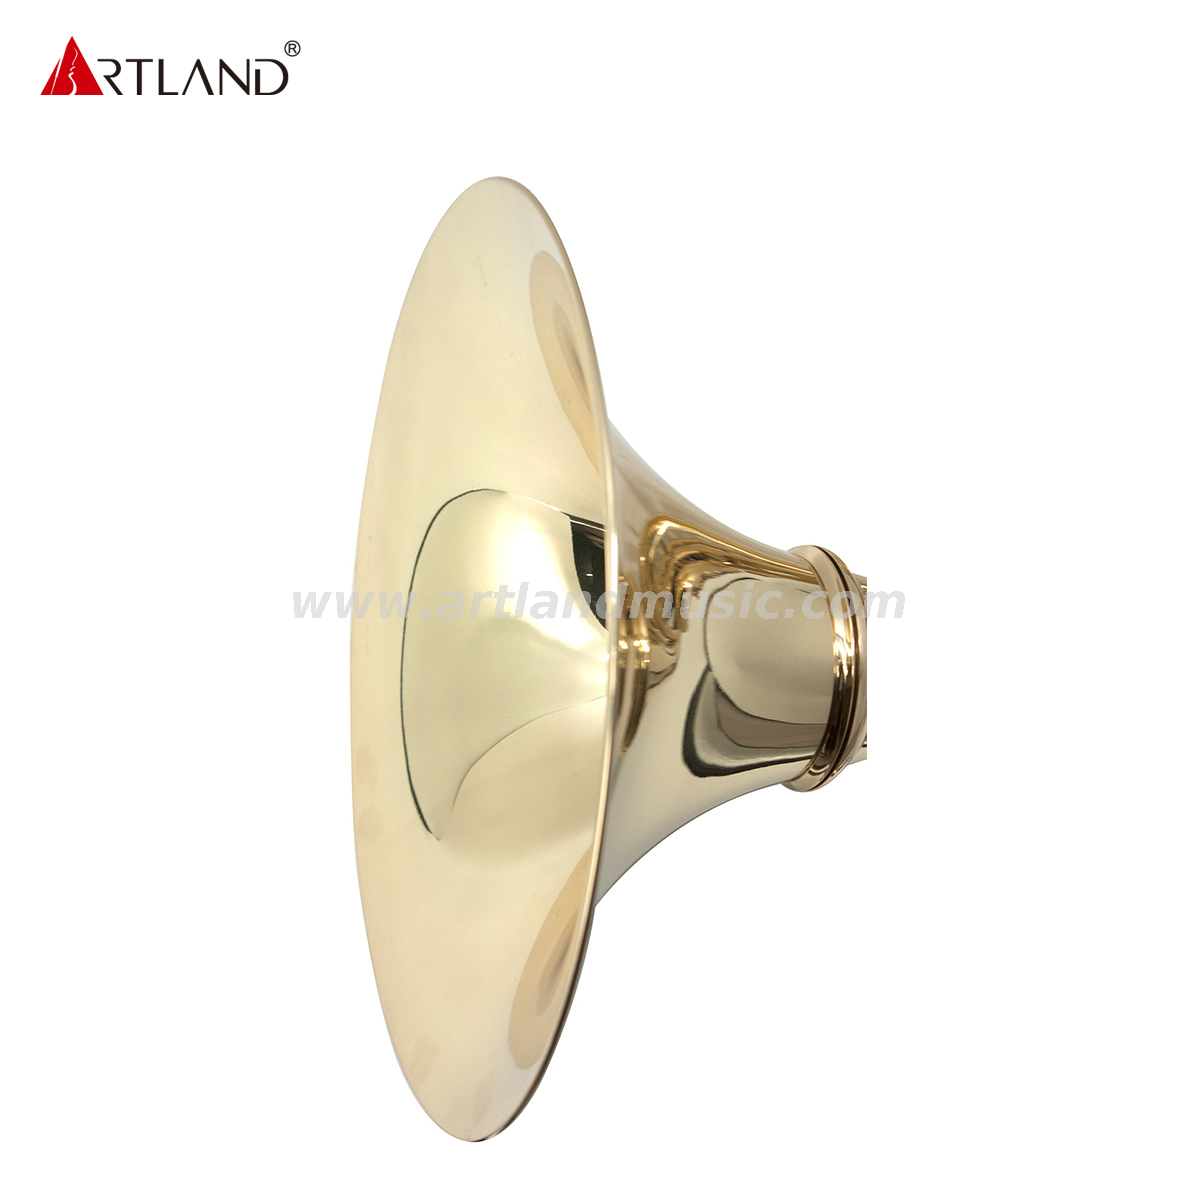 4 Key Single French horn(AHR741)